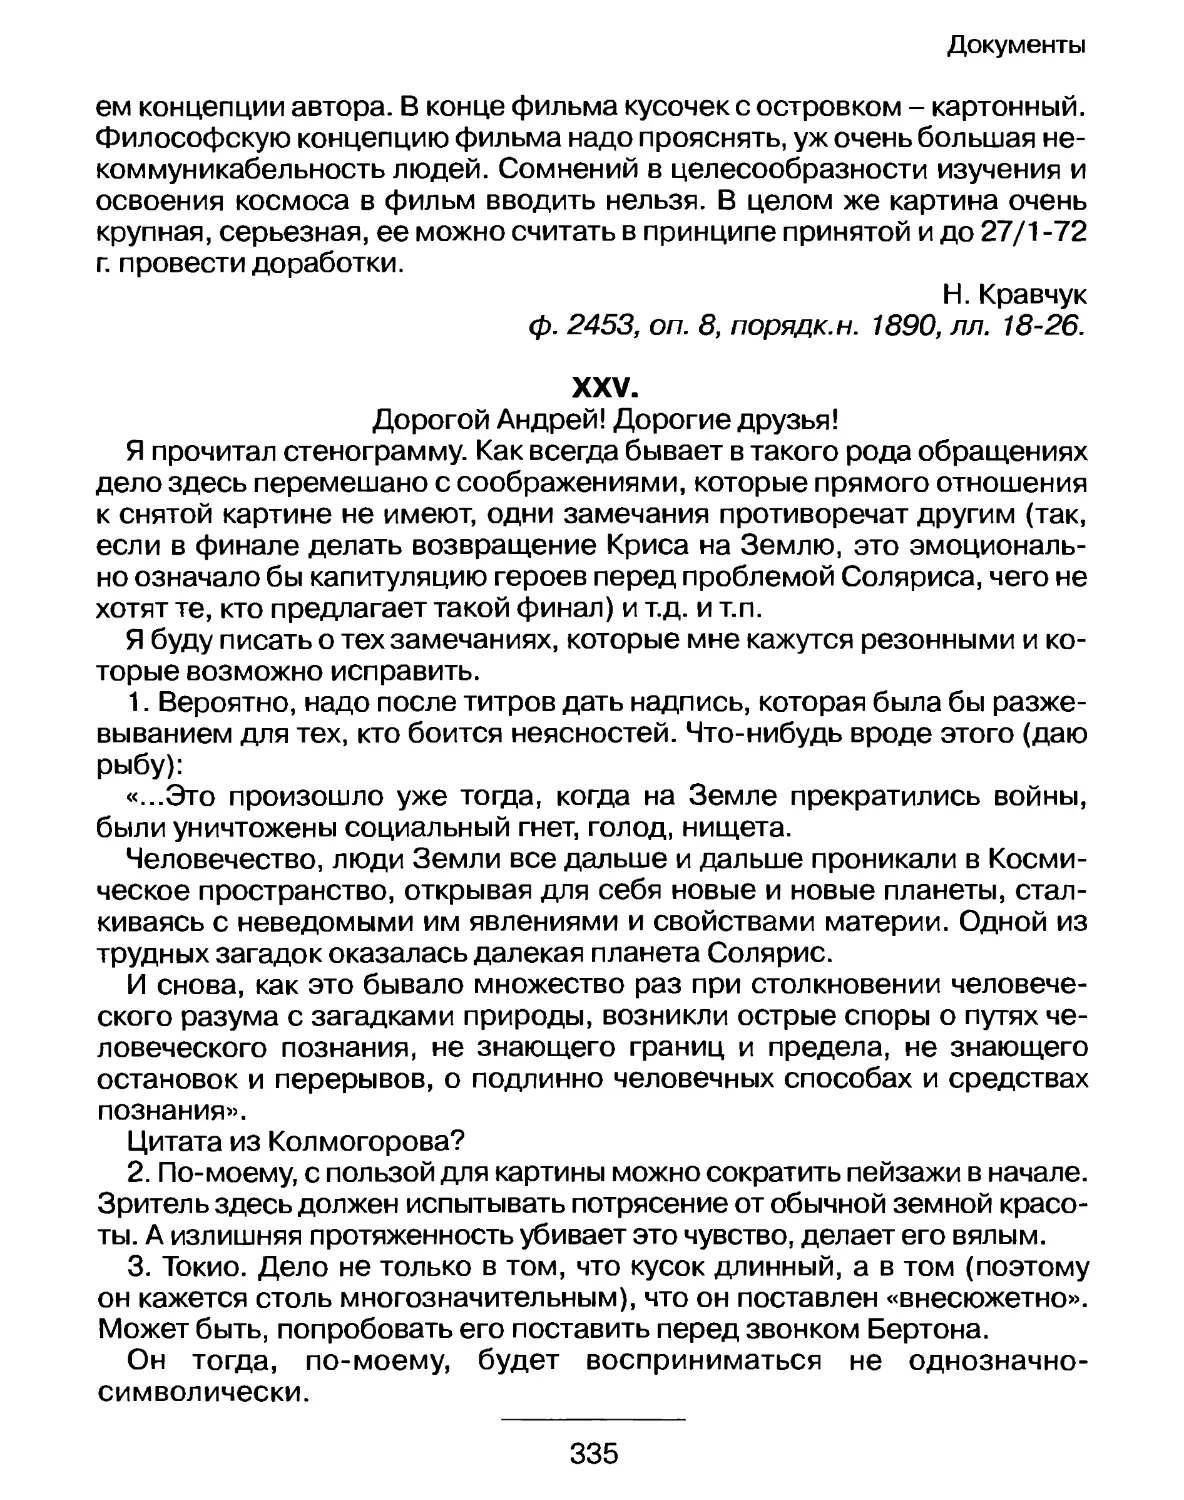 Письмо редактора фильма Л.Лазарева А.Тарковскому от 20 января 1972 г. с предложением поправок